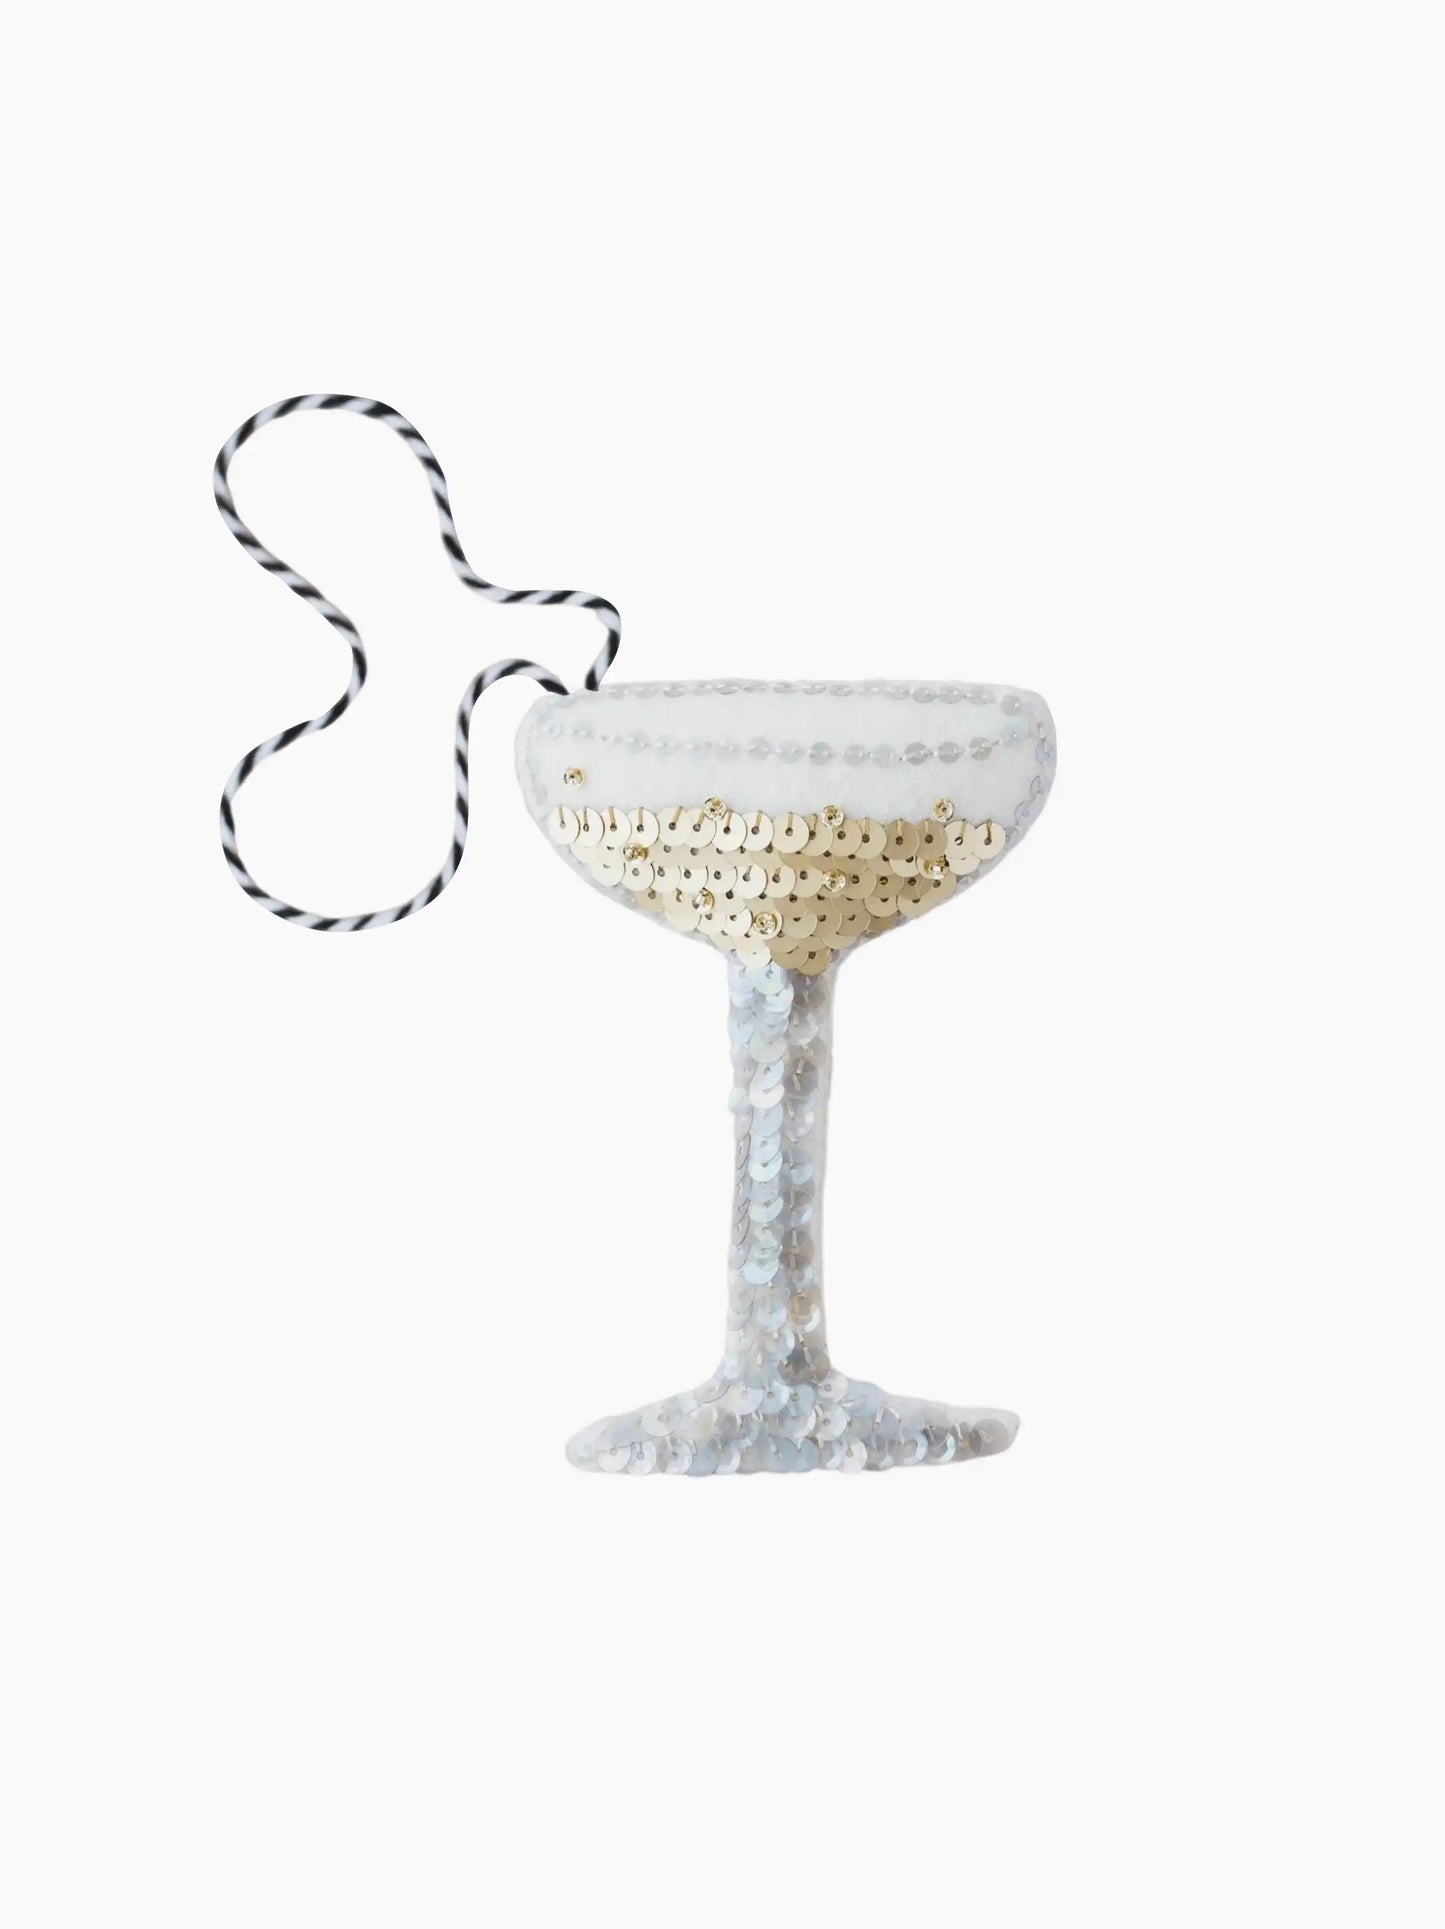 Champagne Coupe Sequin Ornament